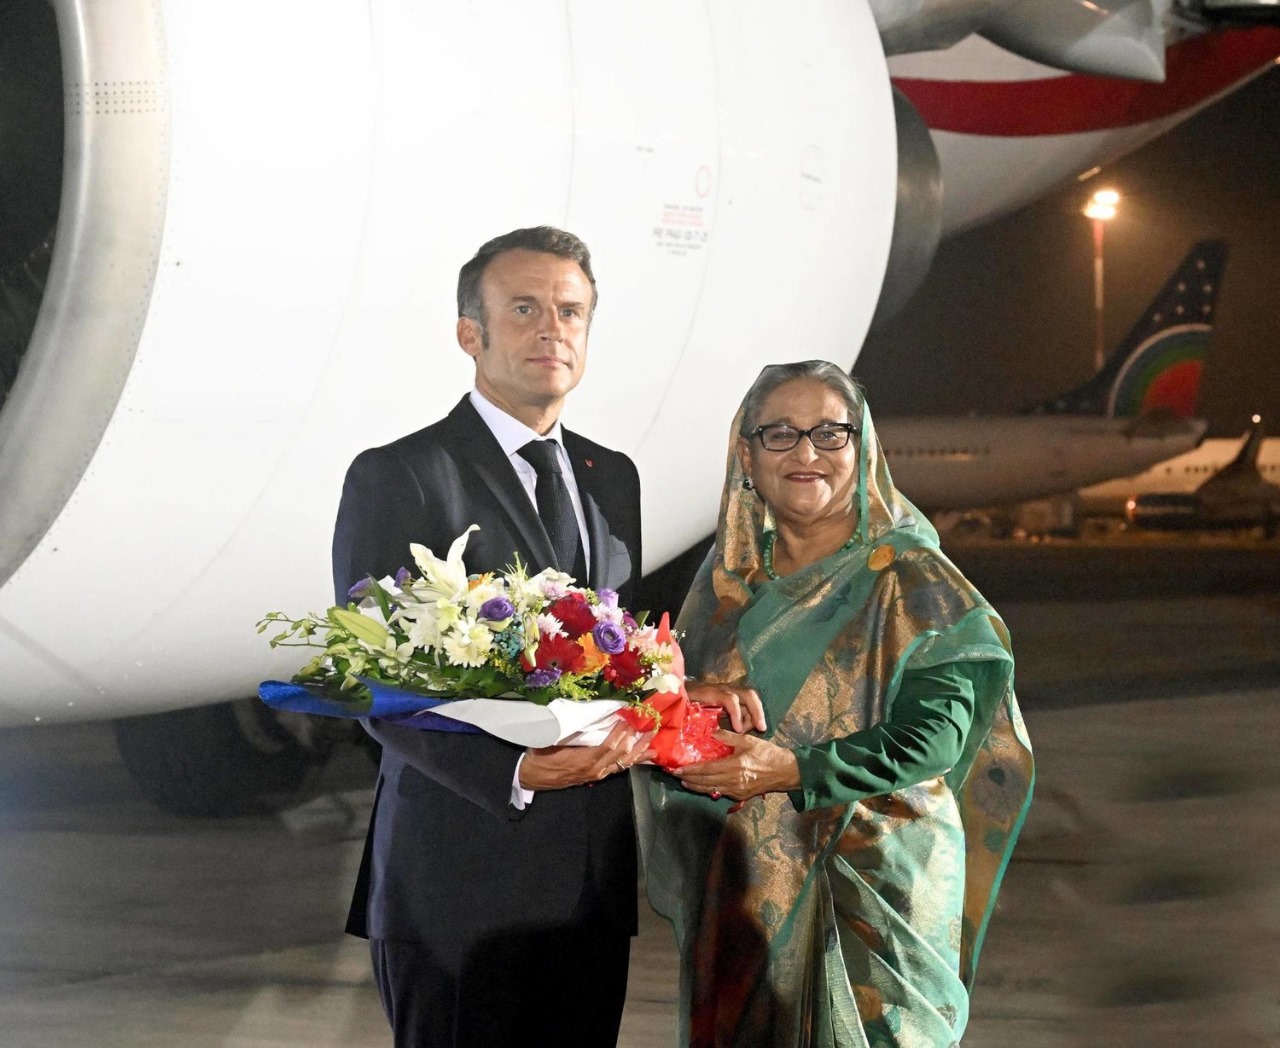 ماكرون في بنجلاديش لترسيخ استراتيجية فرنسا في المحيطين الهندي والهادي